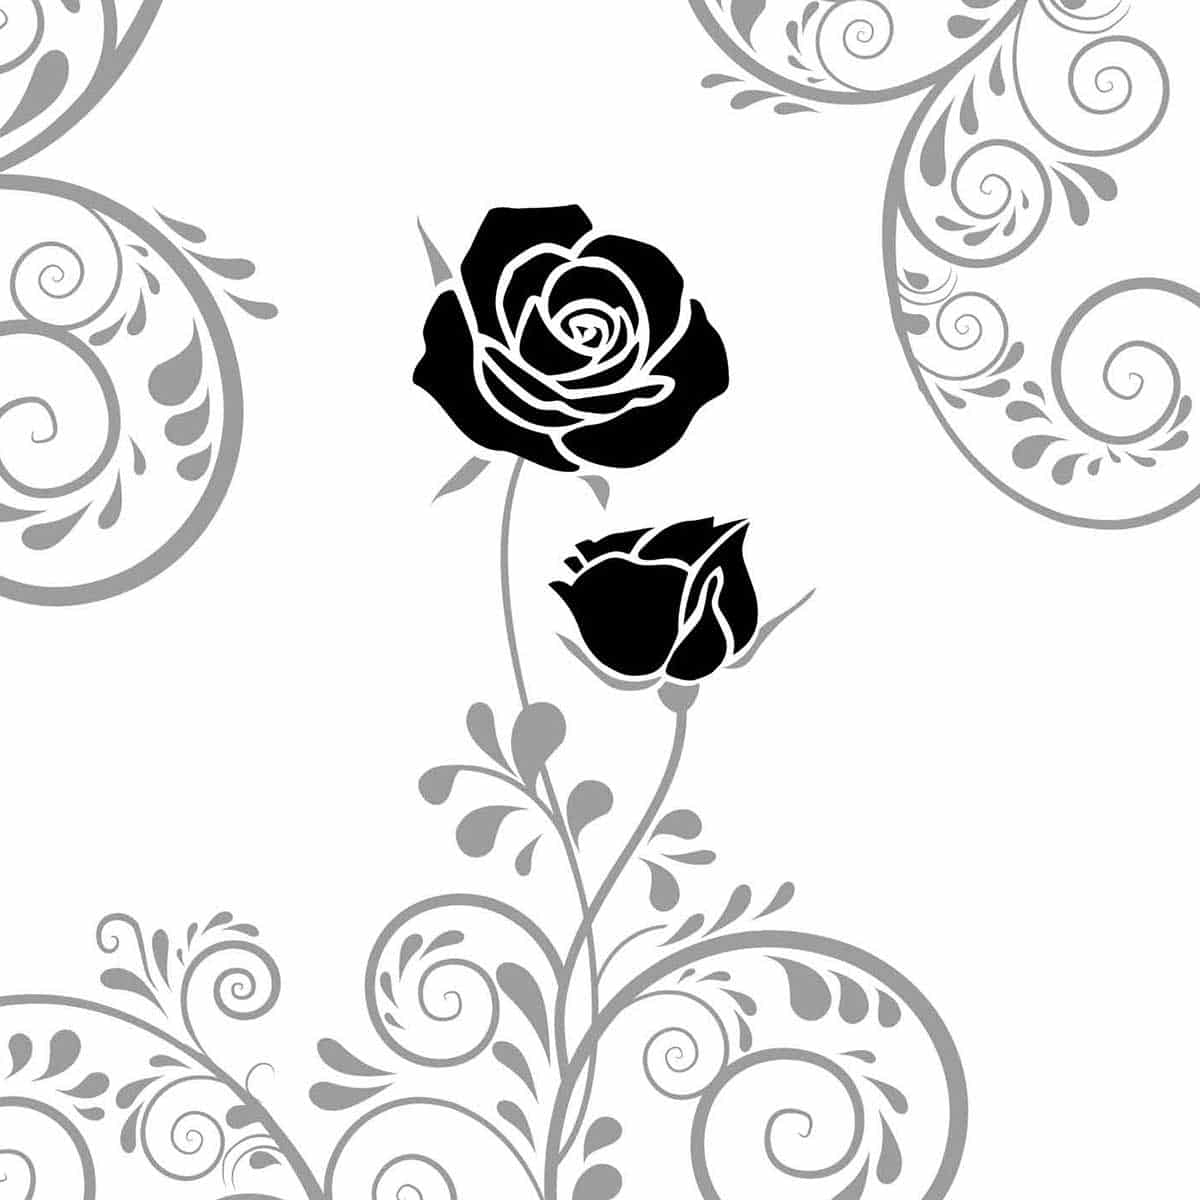 Motiv zwei schwarze Rosen mit platinfarbenen Ornamenten